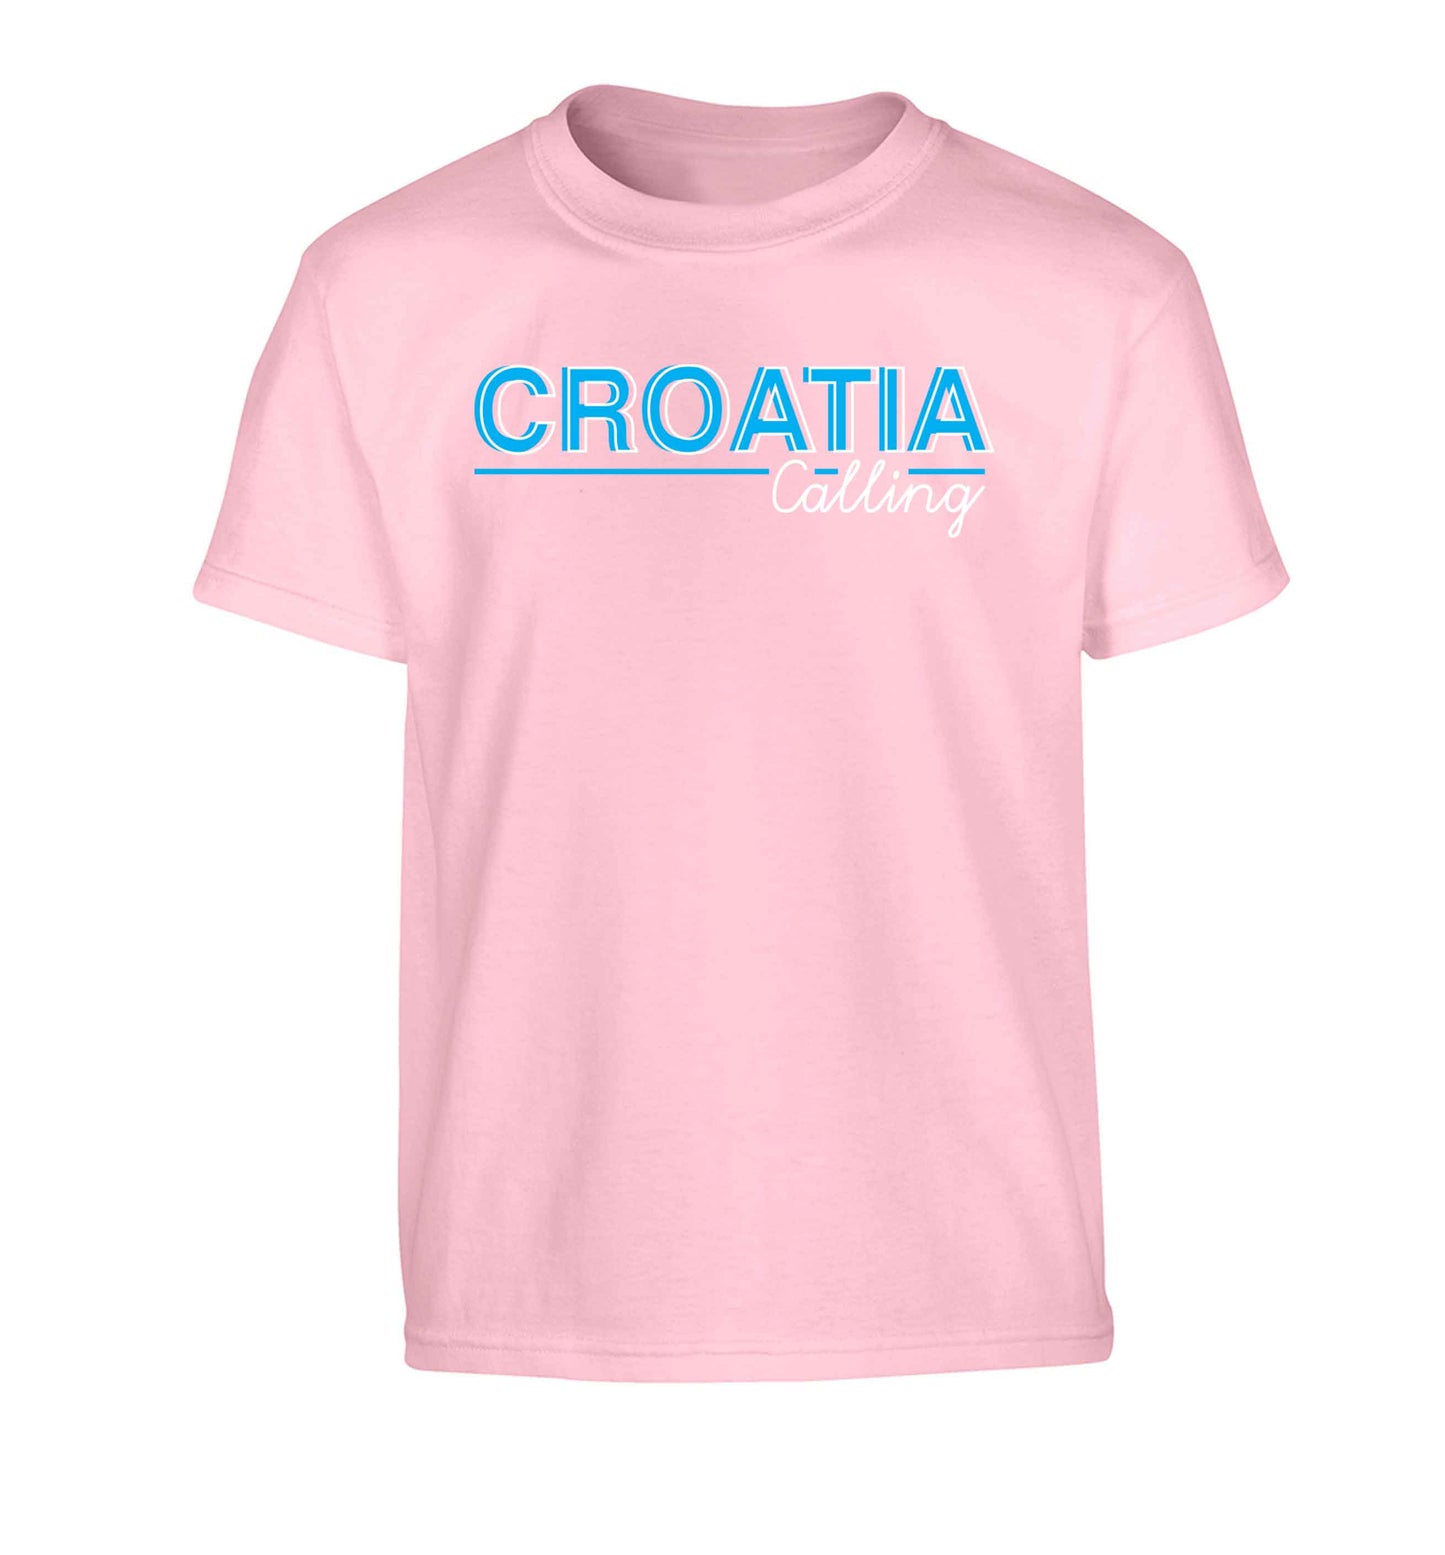 Croatia calling Children's light pink Tshirt 12-13 Years